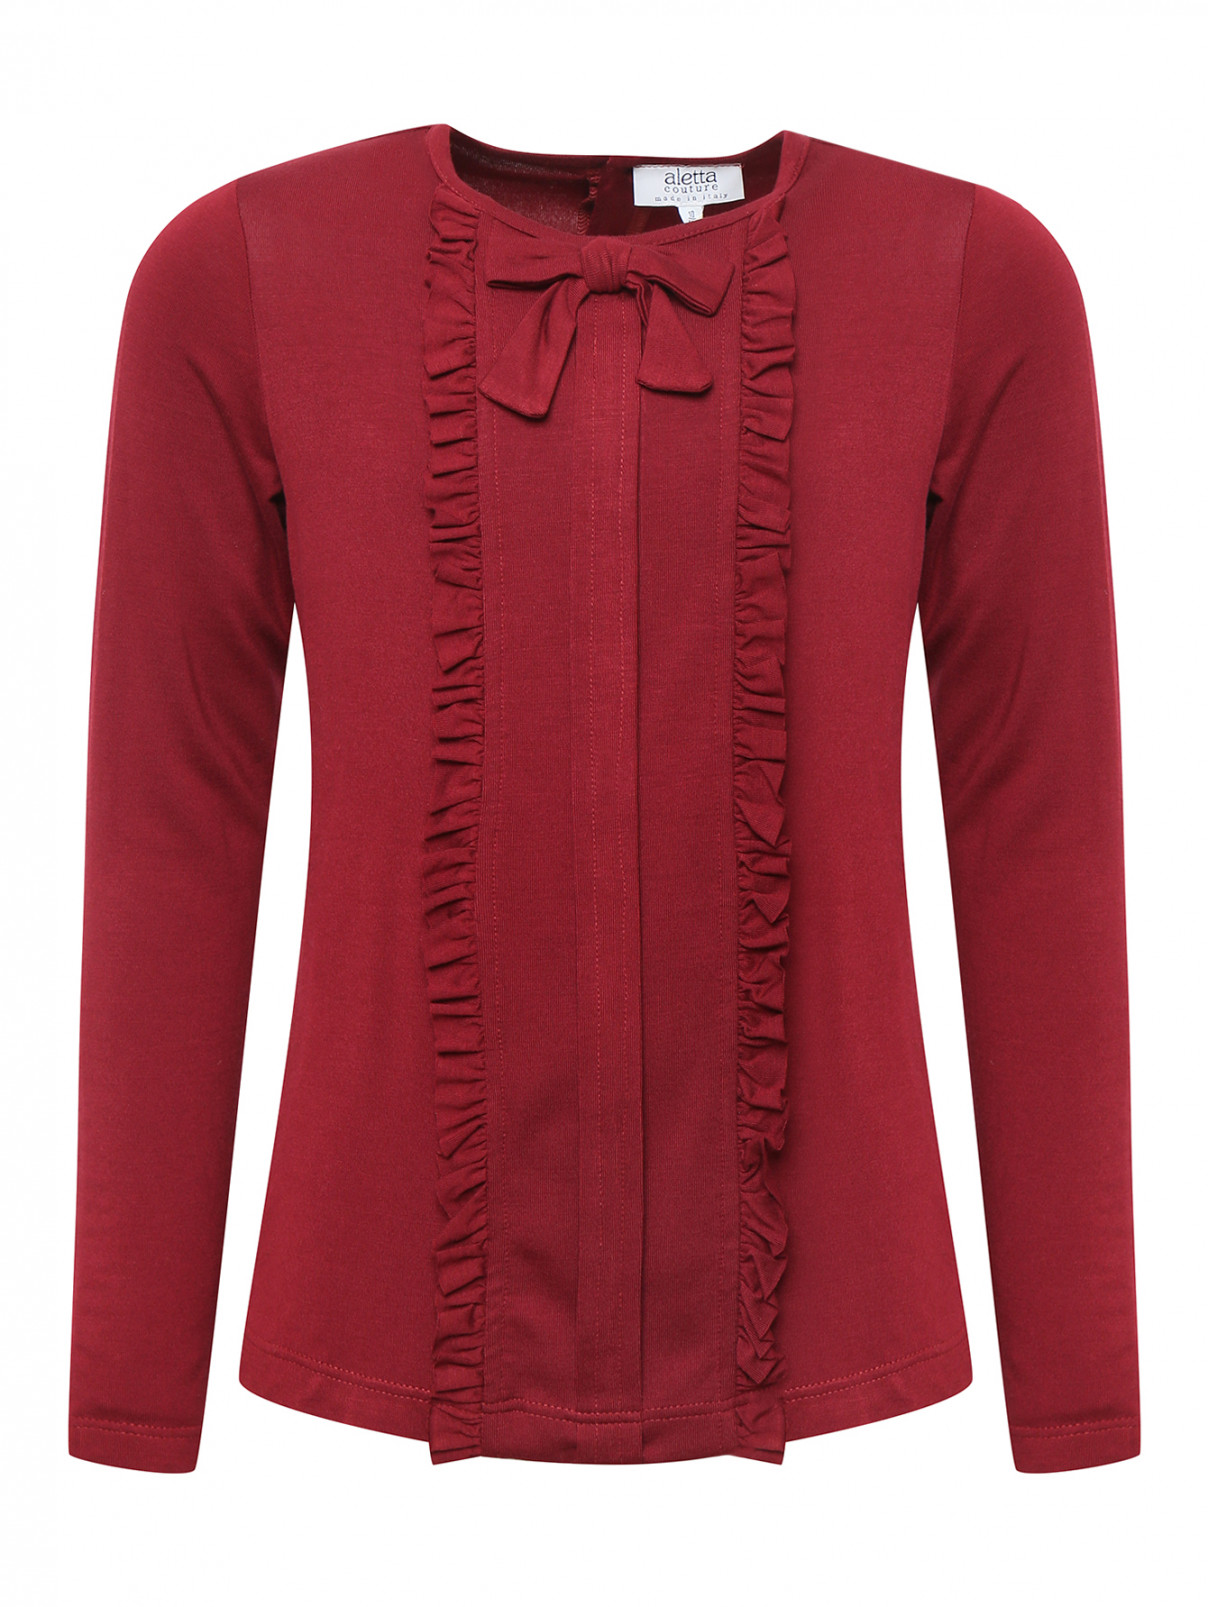 Блуза трикотажная с оборками Aletta Couture  –  Общий вид  – Цвет:  Красный